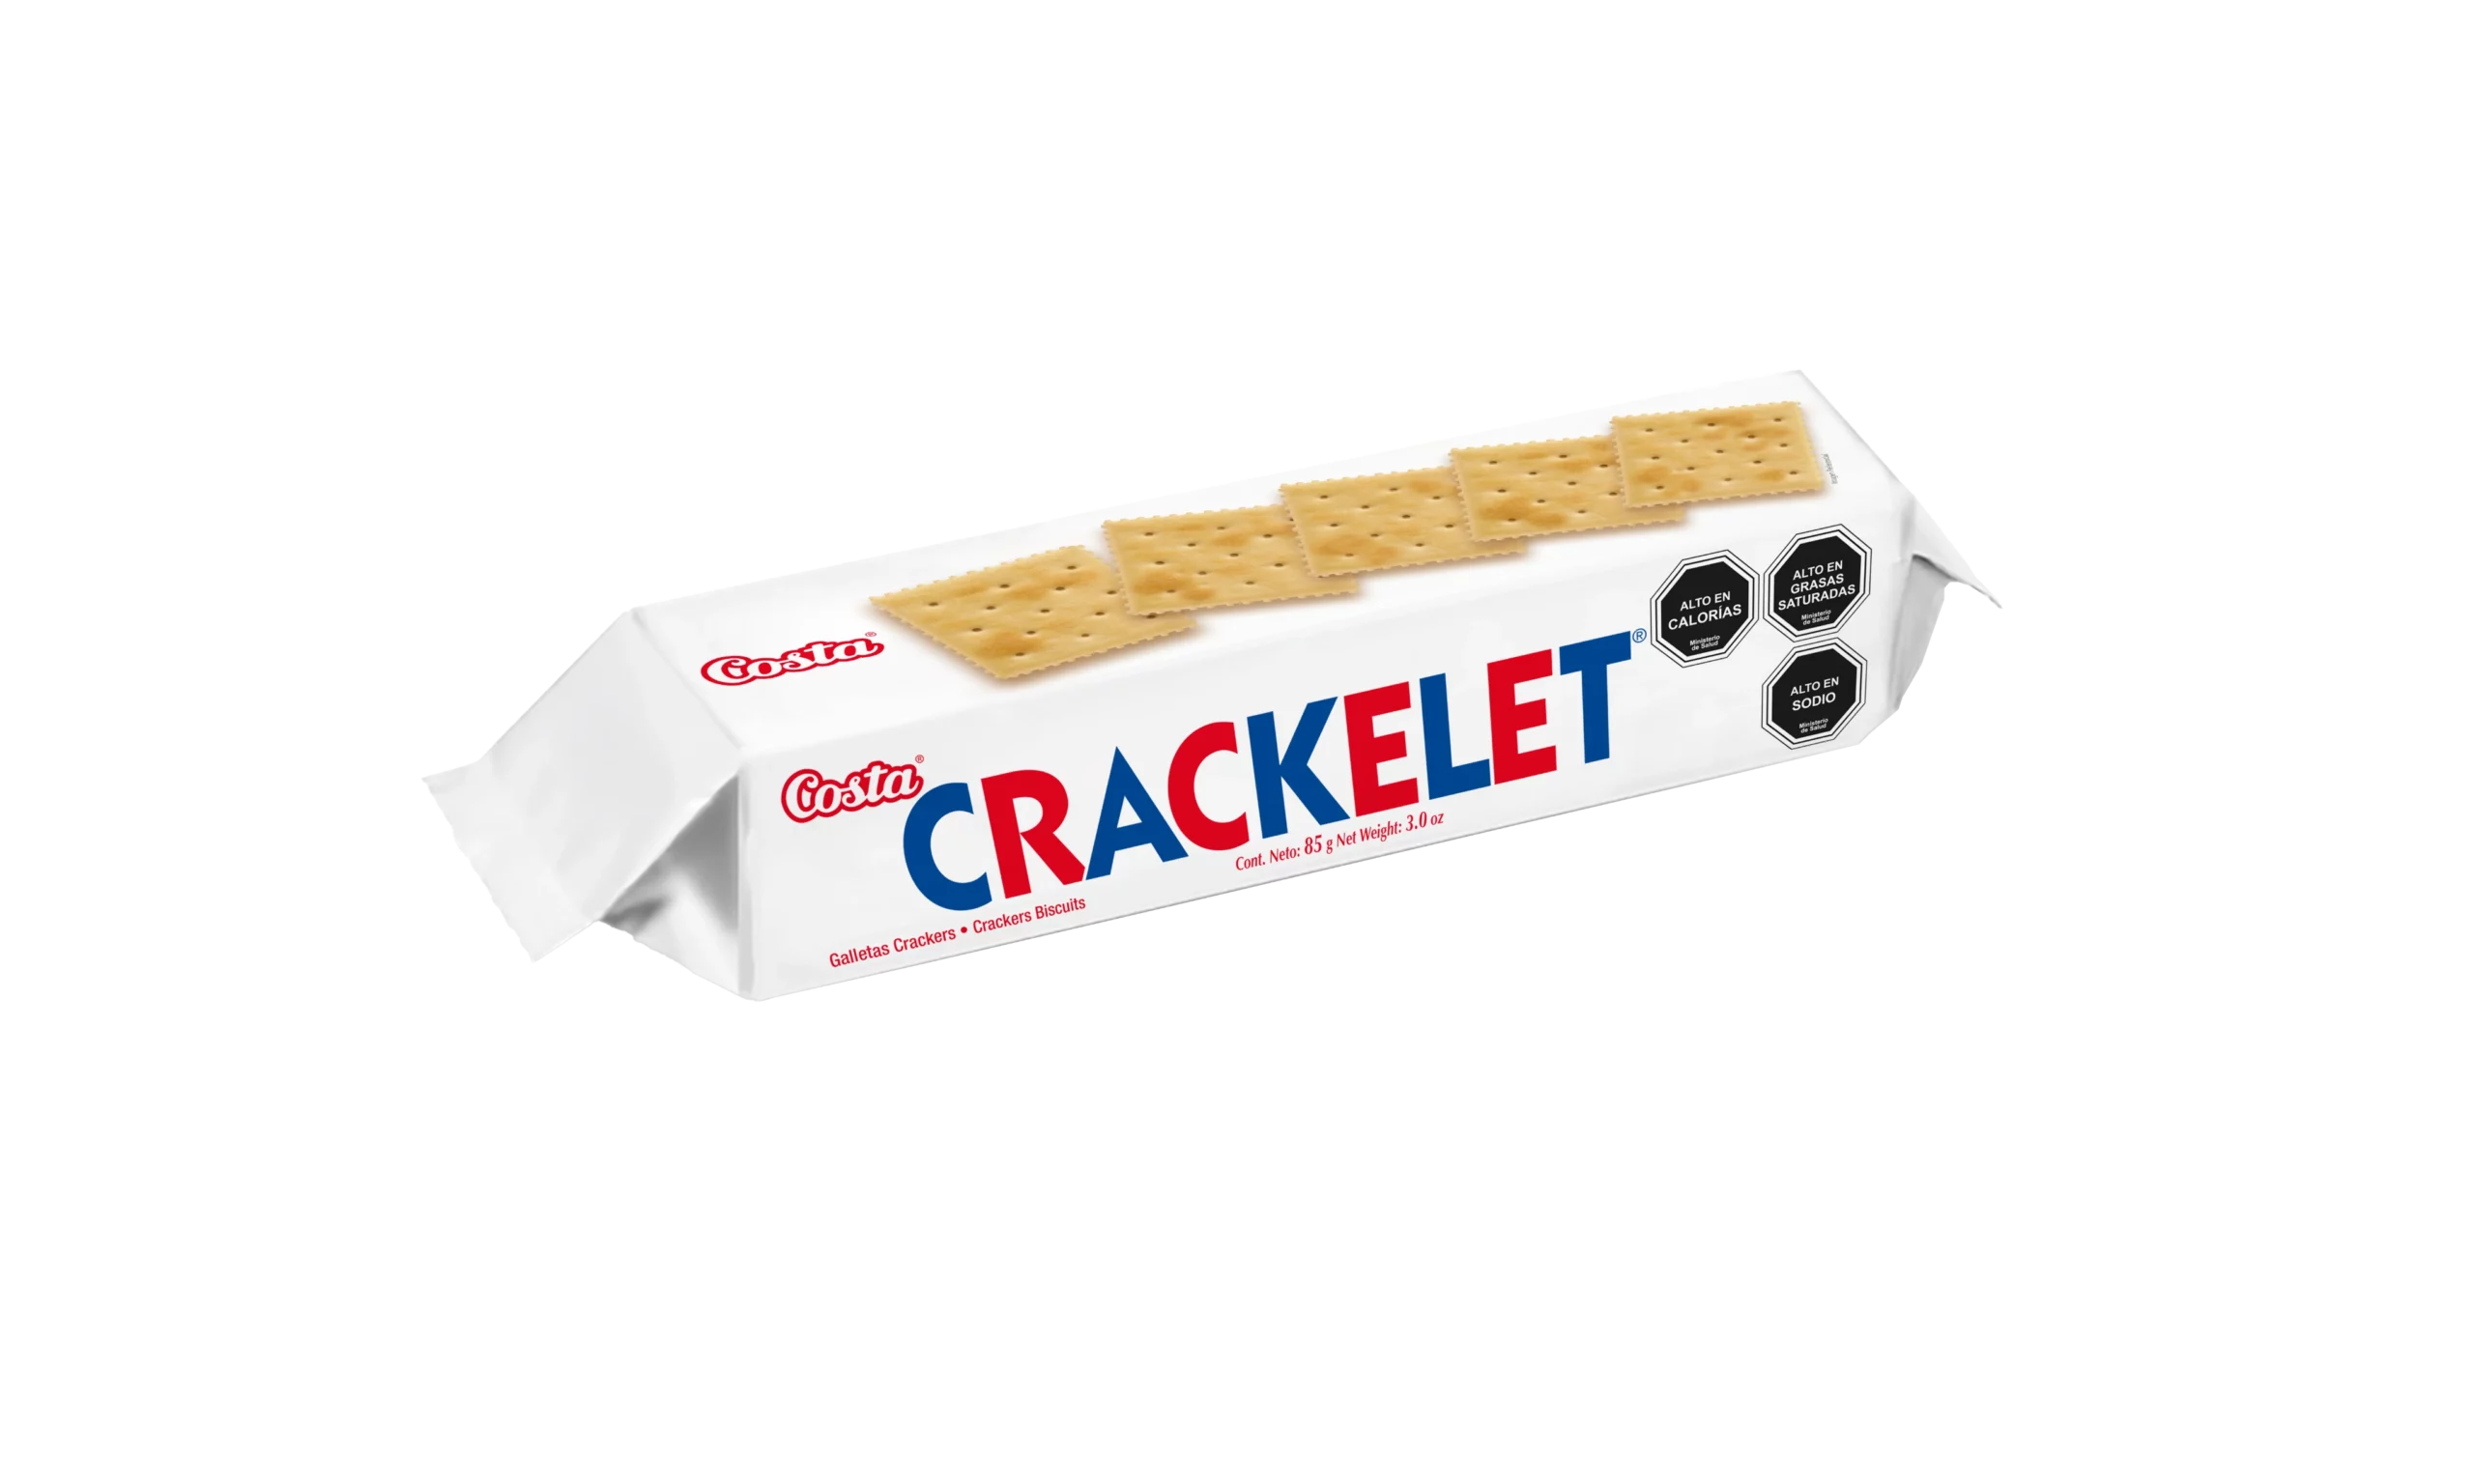 Crackelet Clásica